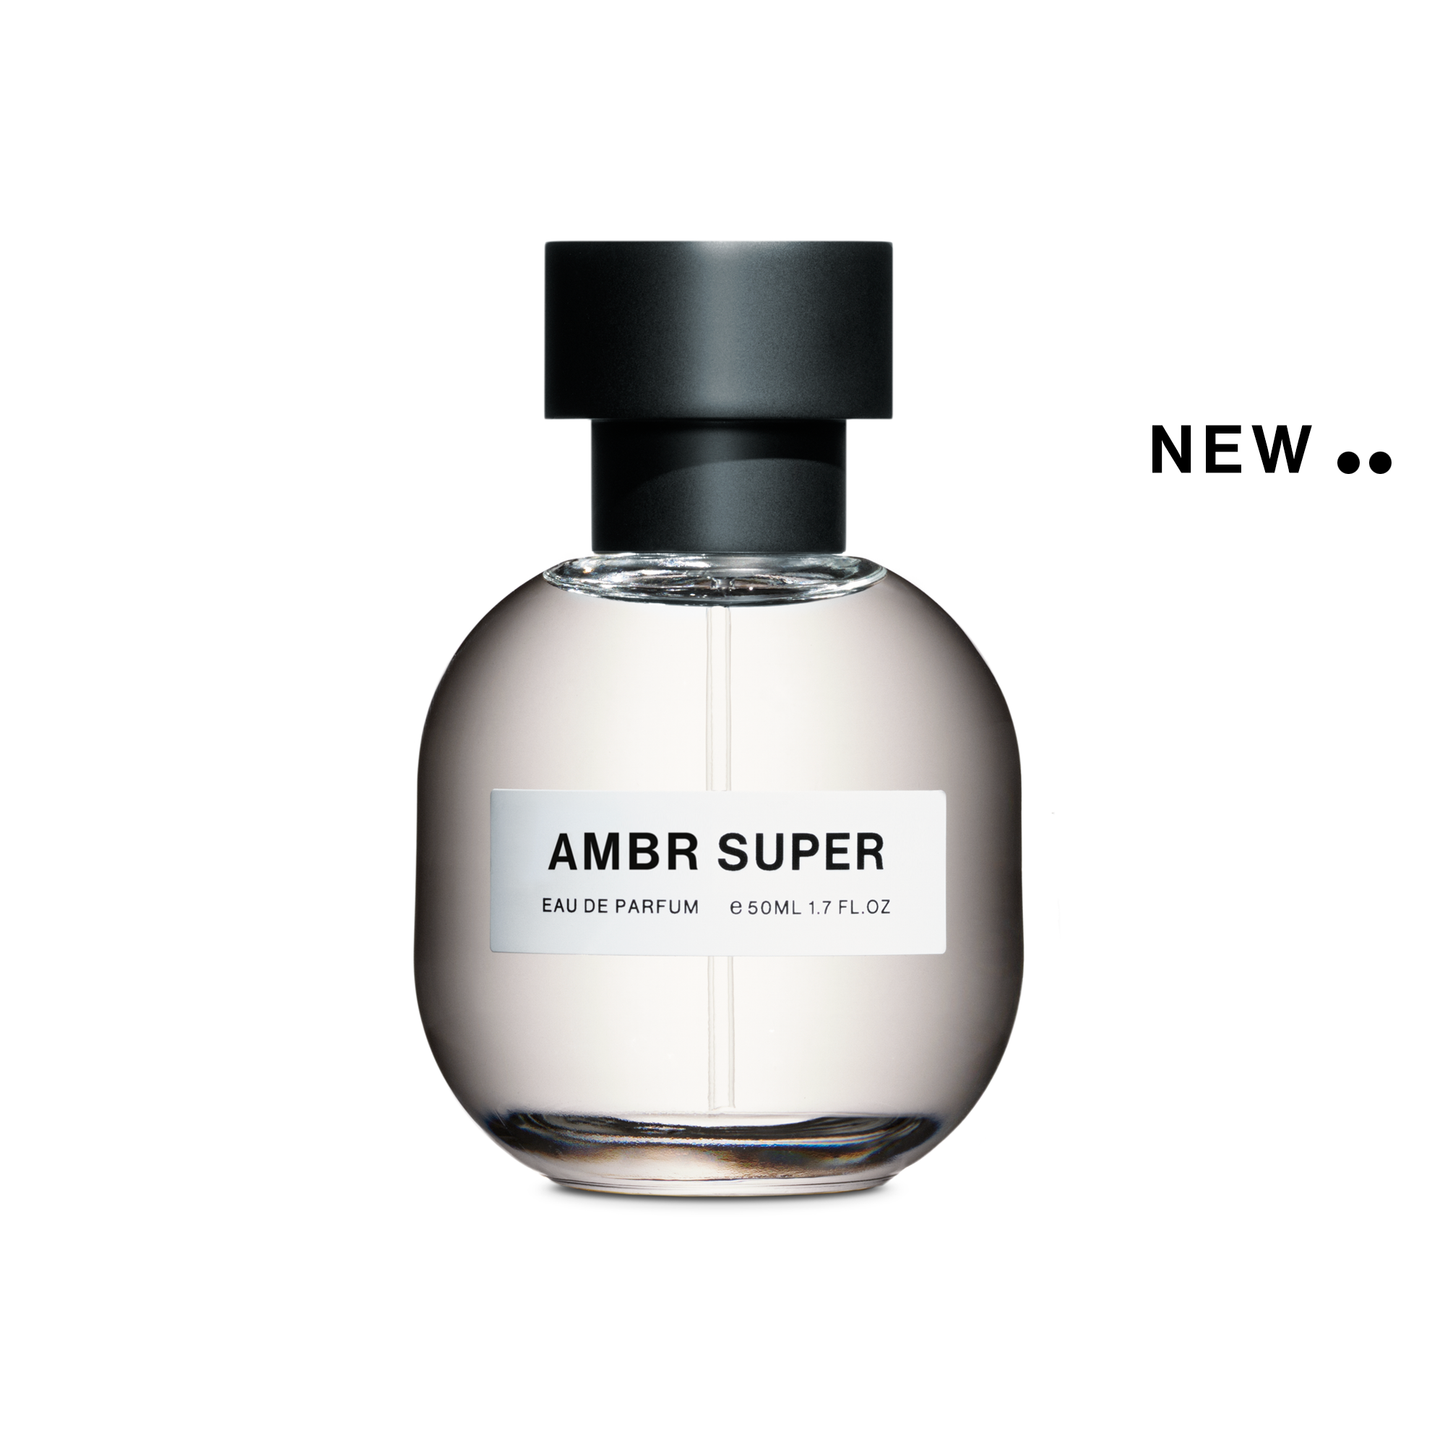 AMBR SUPER